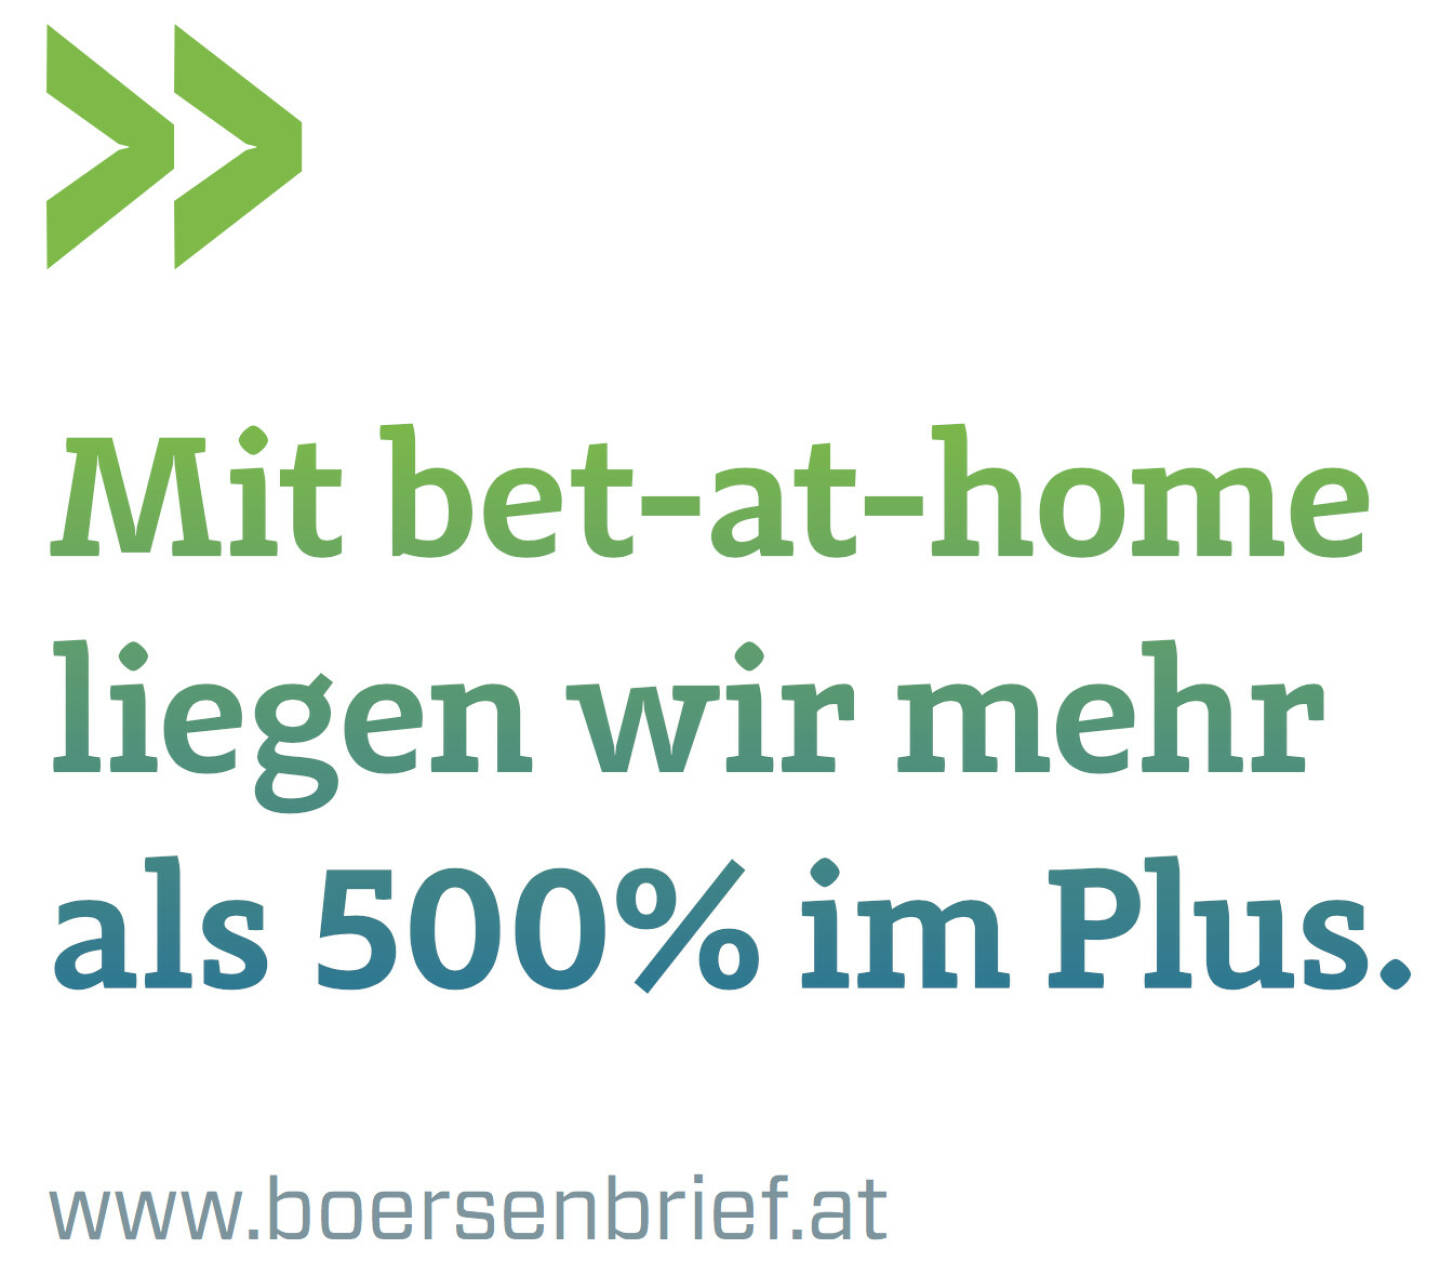 Mit bet-at-home liegen wir mehr als 500% im Plus. (www.boersenbrief.at)